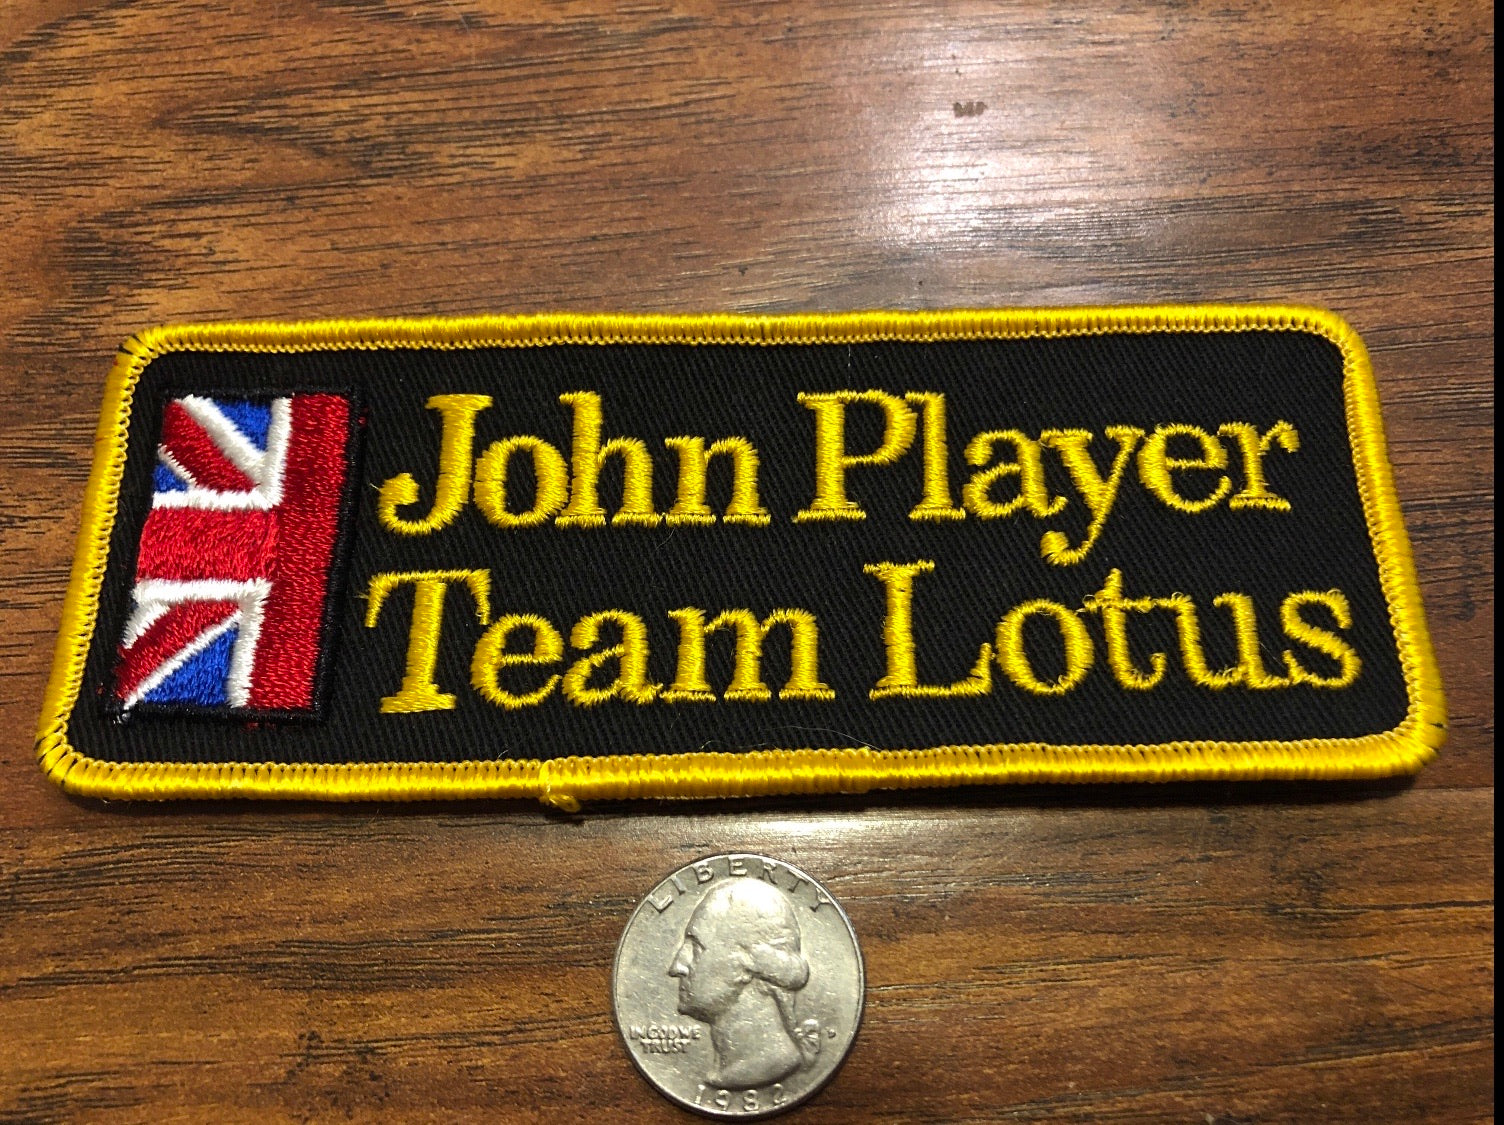 Vintage John Player/Team Lotus